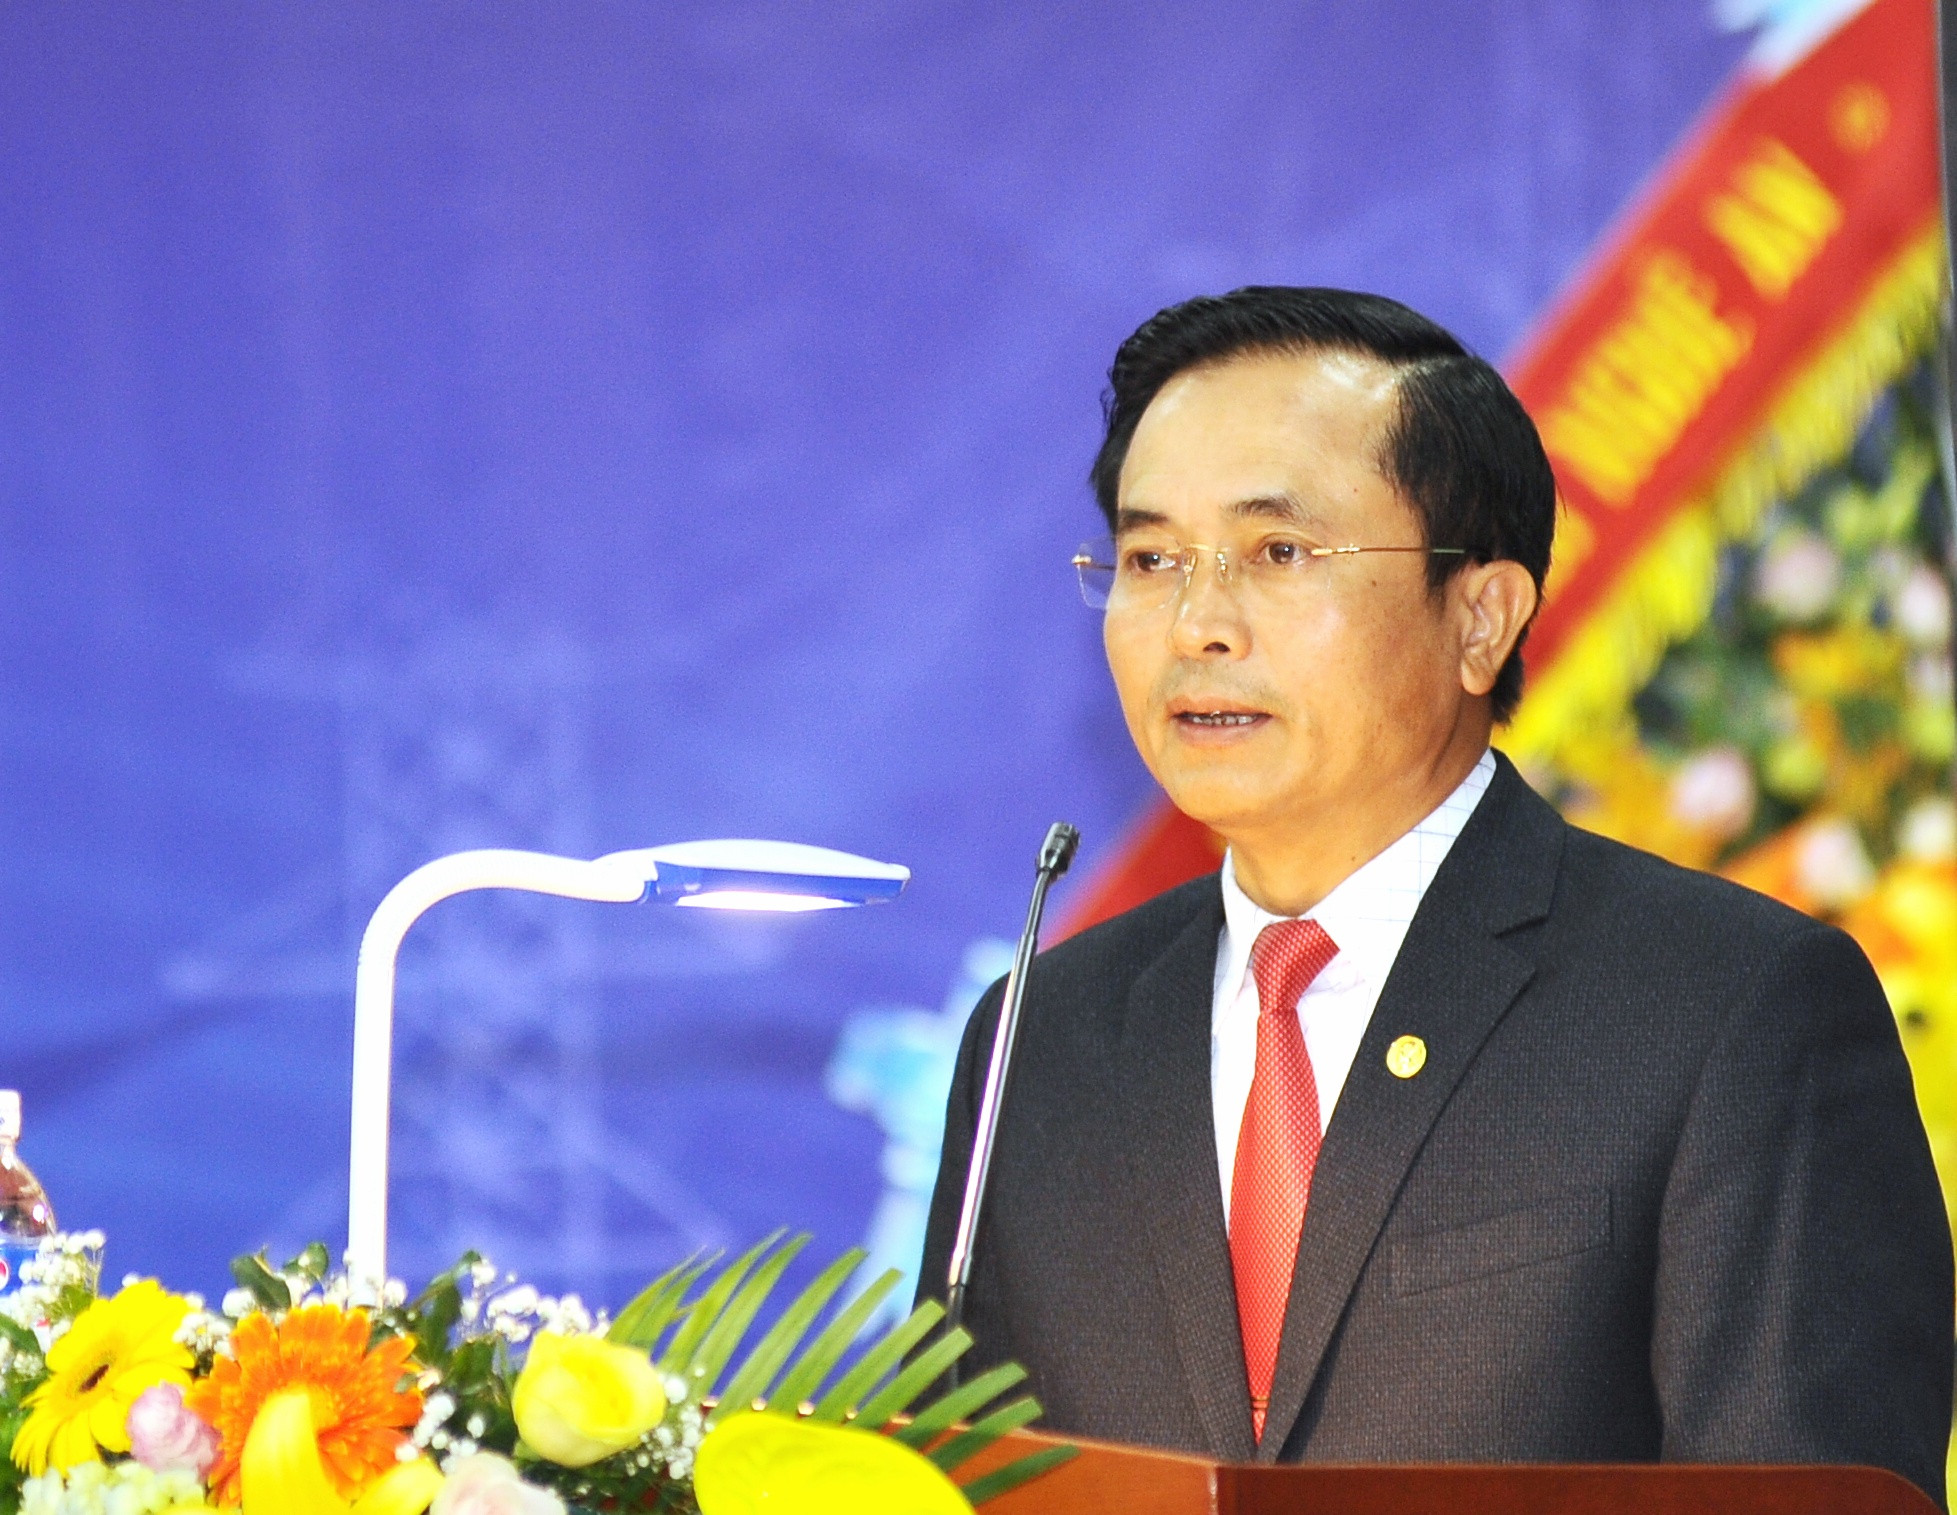 Đồng chí Lê Ngọc Hoa-Phó Chủ tịch UBND tỉnh ghi nhận những kết quả mà ngành Điện đã đạt được trong thời gian qua, góp phần thúc đẩy sự phát triển kinh tế-xã hội của tỉnh